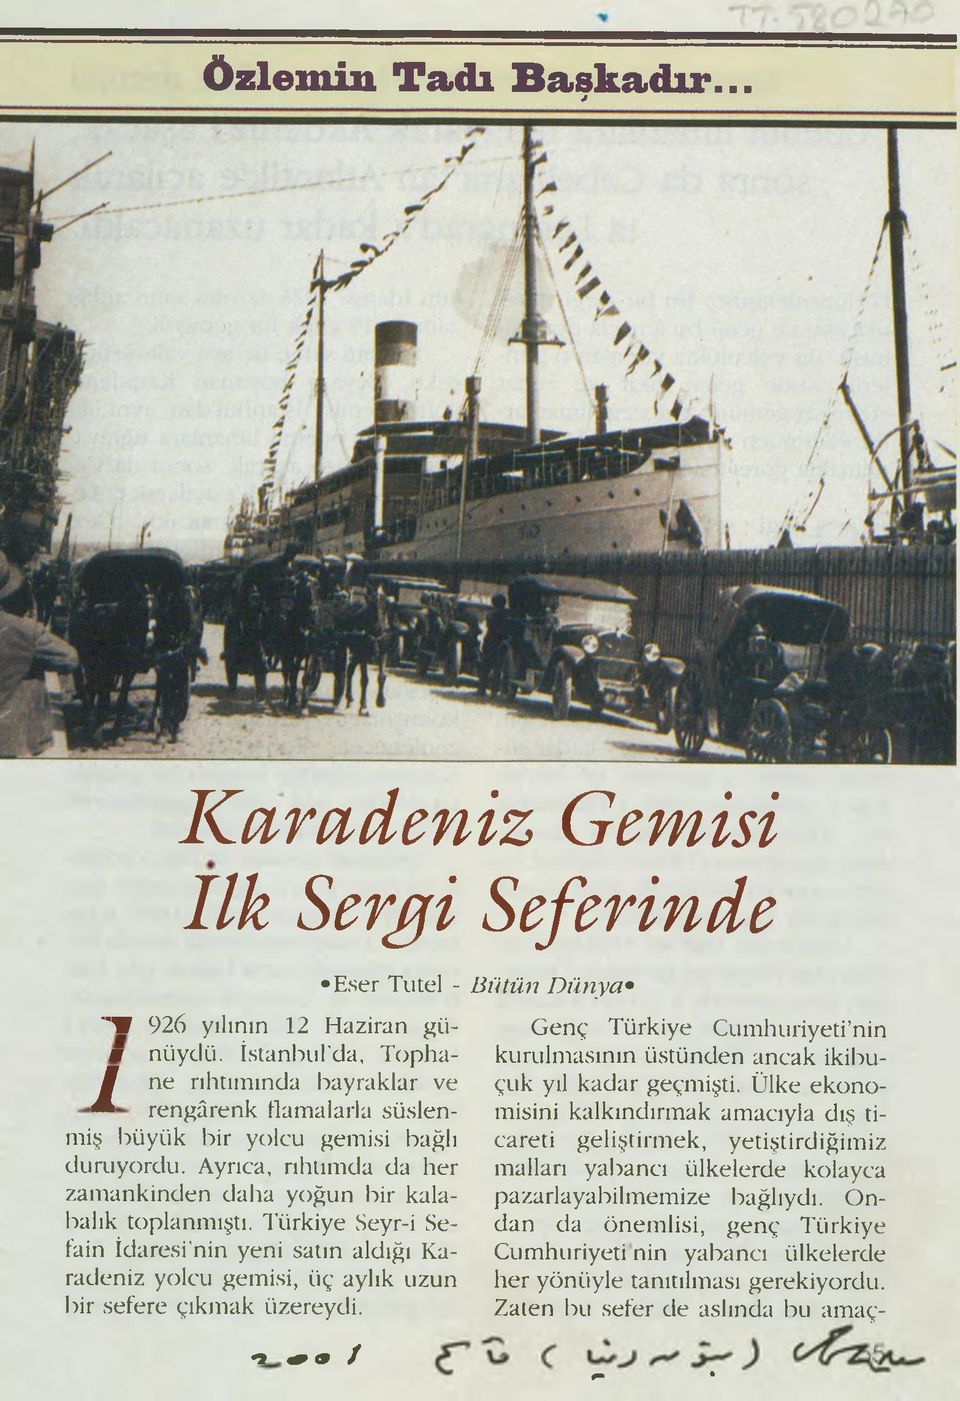 Türkiye Seyr-i Sefain İdaresi nin yeni satın aldığı Karadeniz yolcu gemisi, üç aylık uzun bir sefere çıkmak üzereydi.